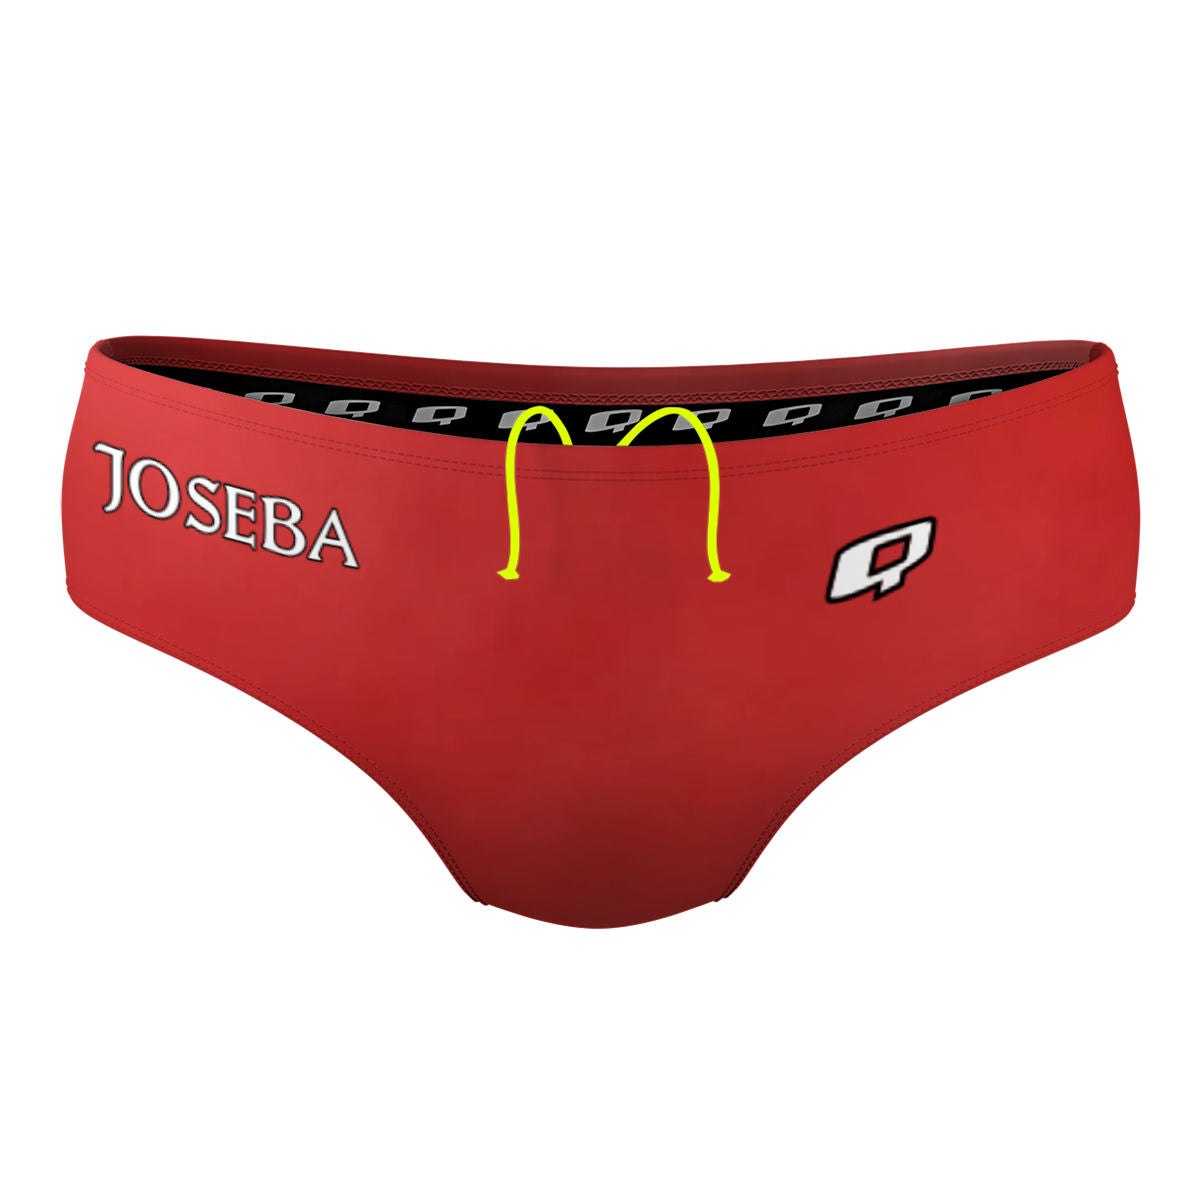 joseba1 - Classic Brief Swimsuit